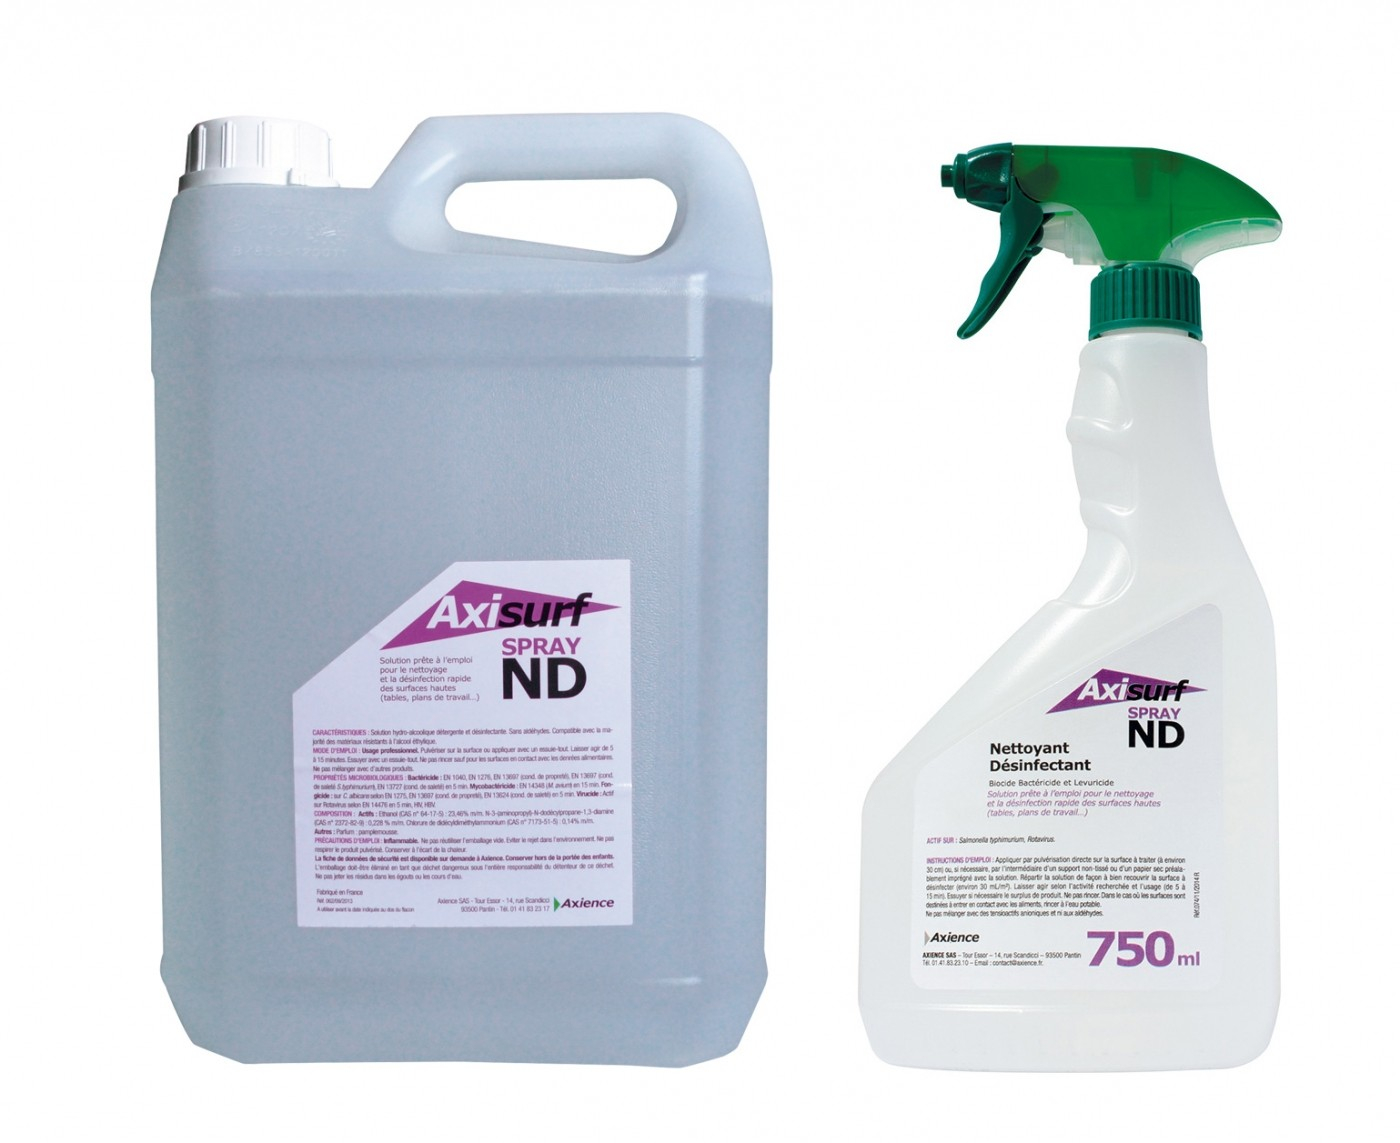 AXIENCE Axisurf ND Spray - Soluzione idroalcolica detergente e disinfettante